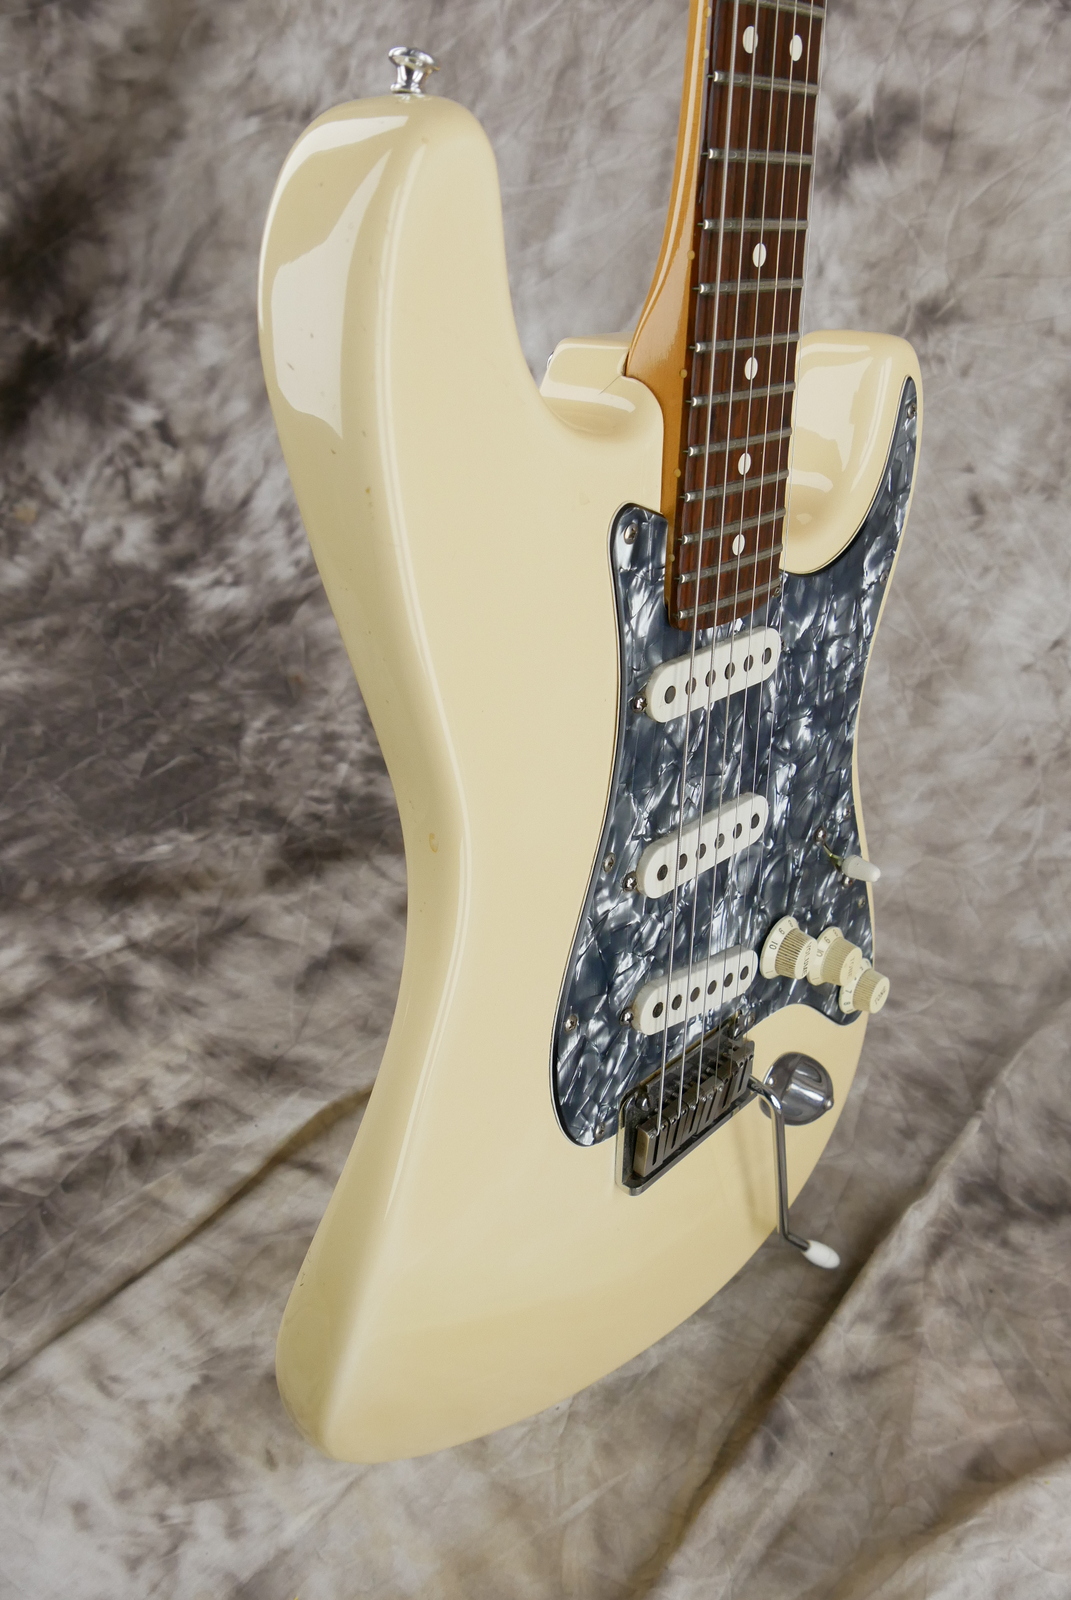 Fender_Stratocaster_AM_Standard_olympic_white_1995-005.JPG